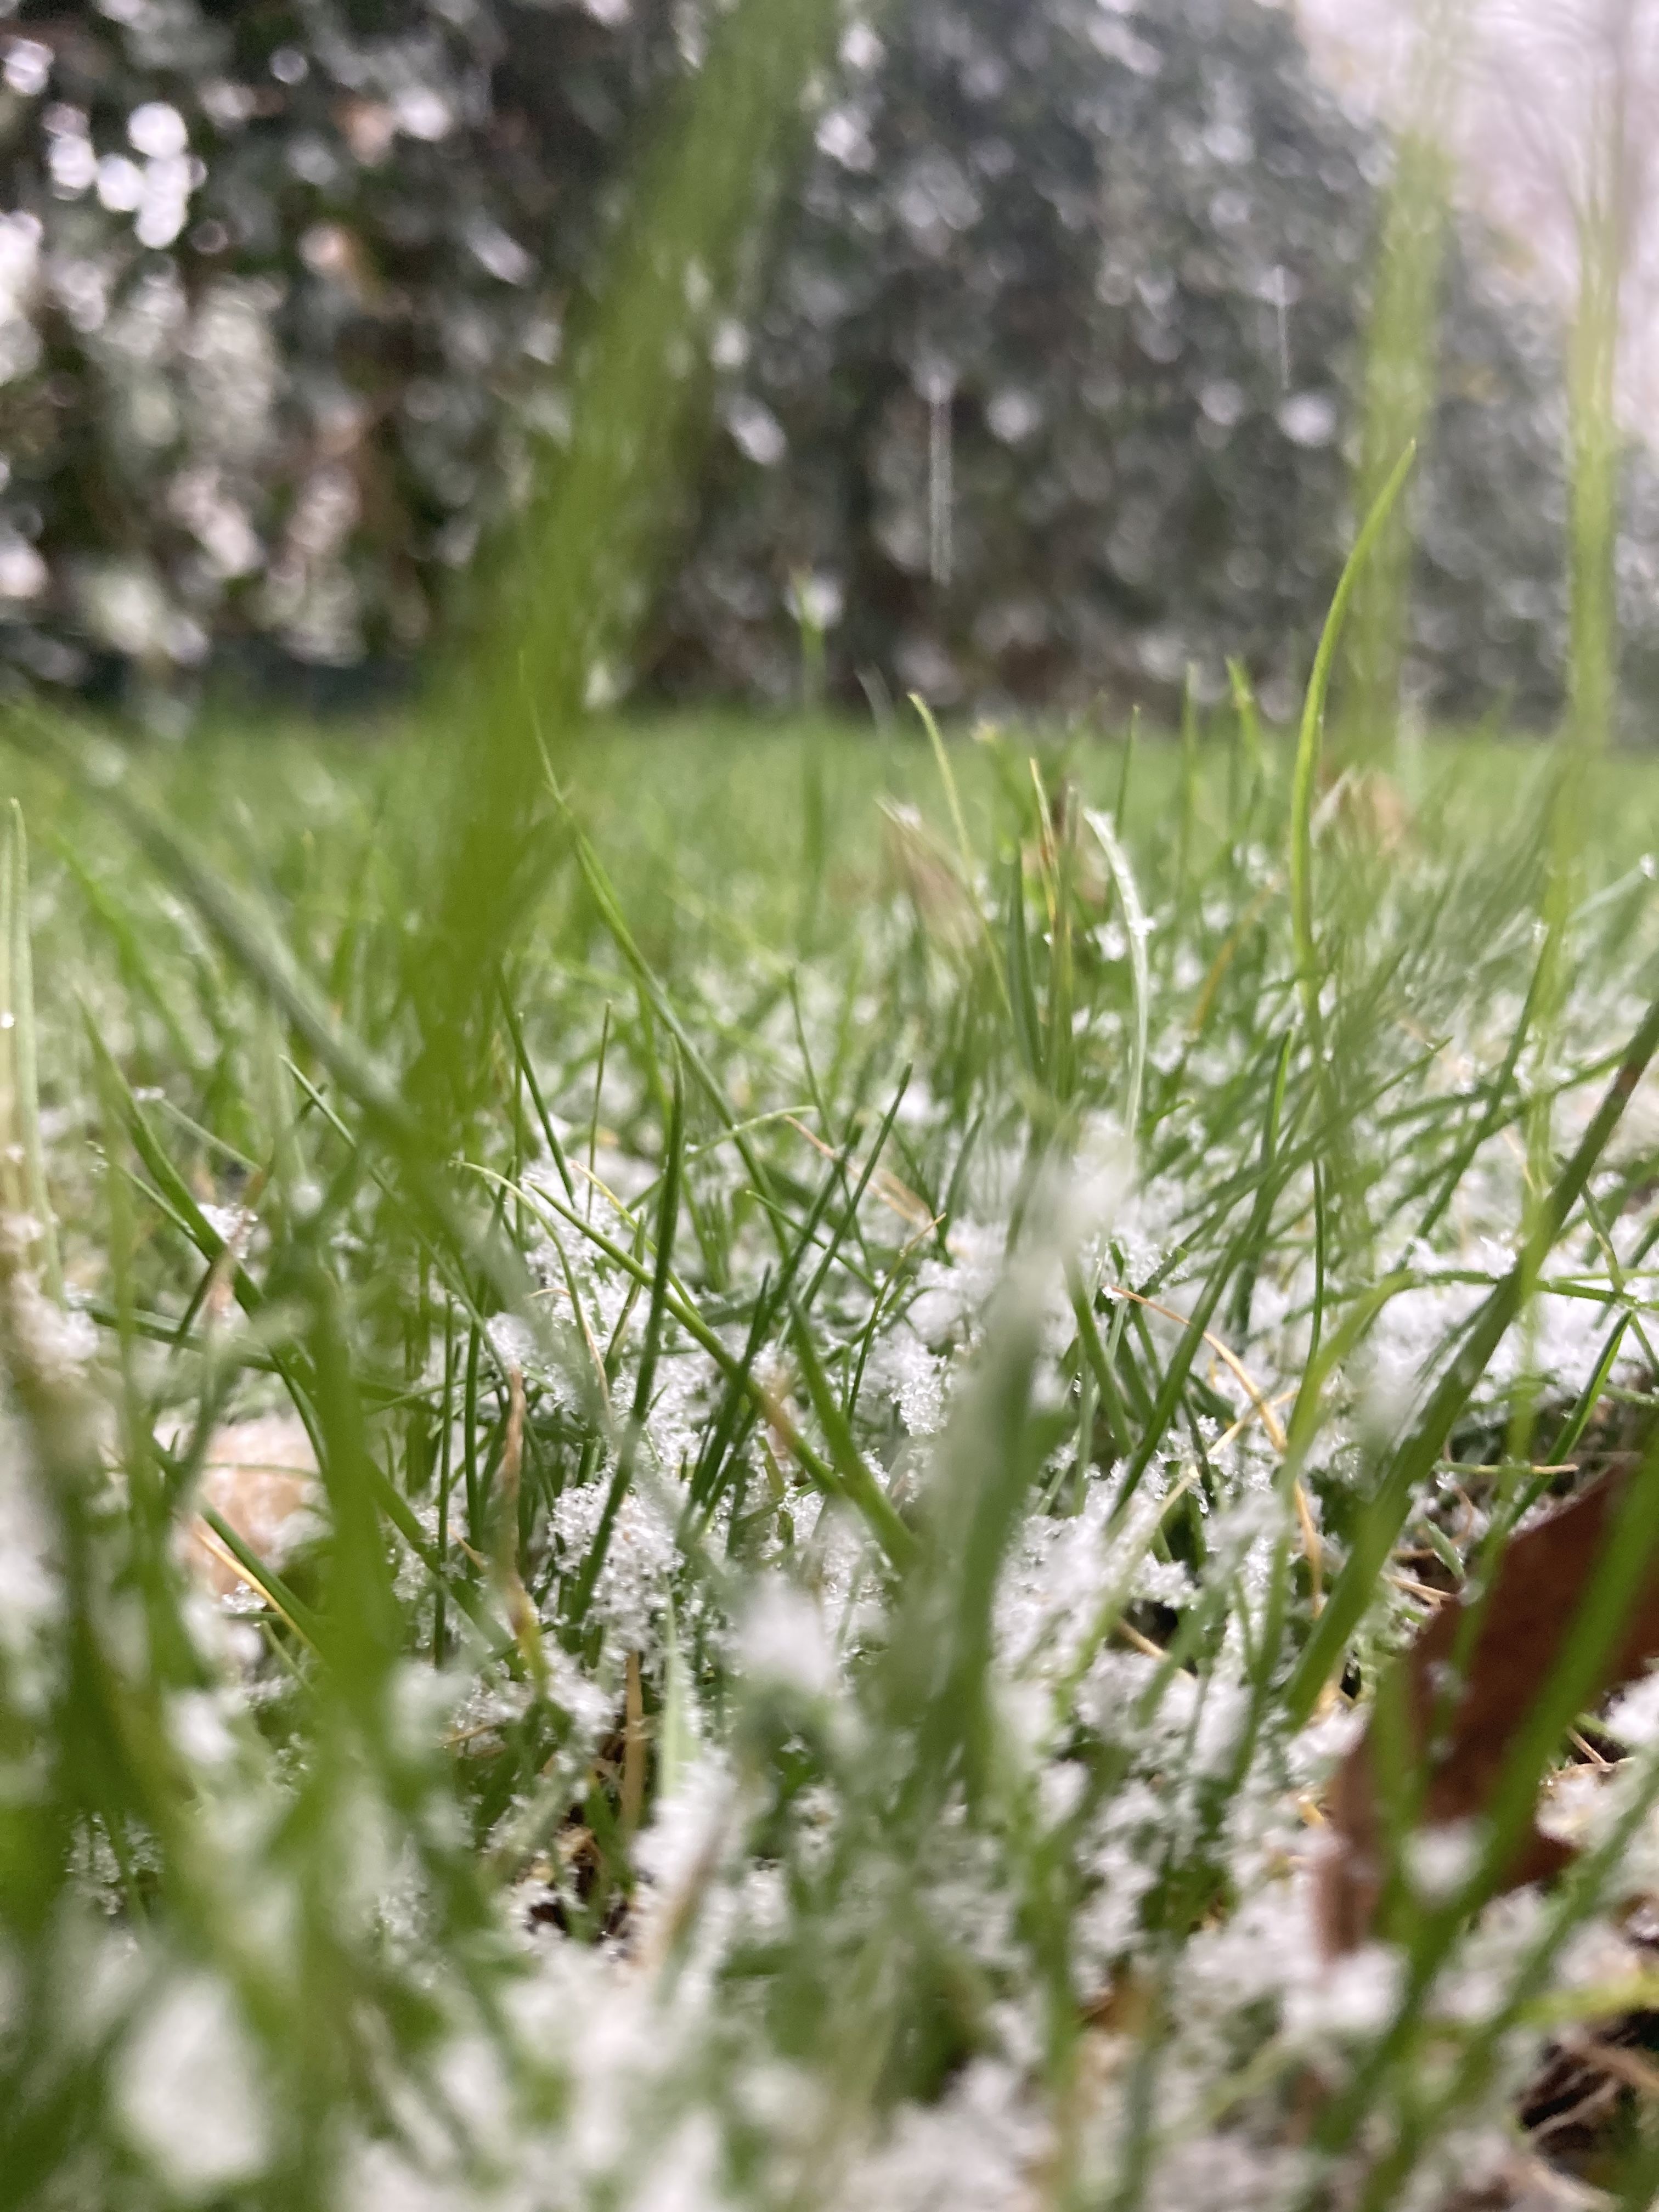 Sneeuw blijft een beetje liggen in het gras maar smelt weer weg